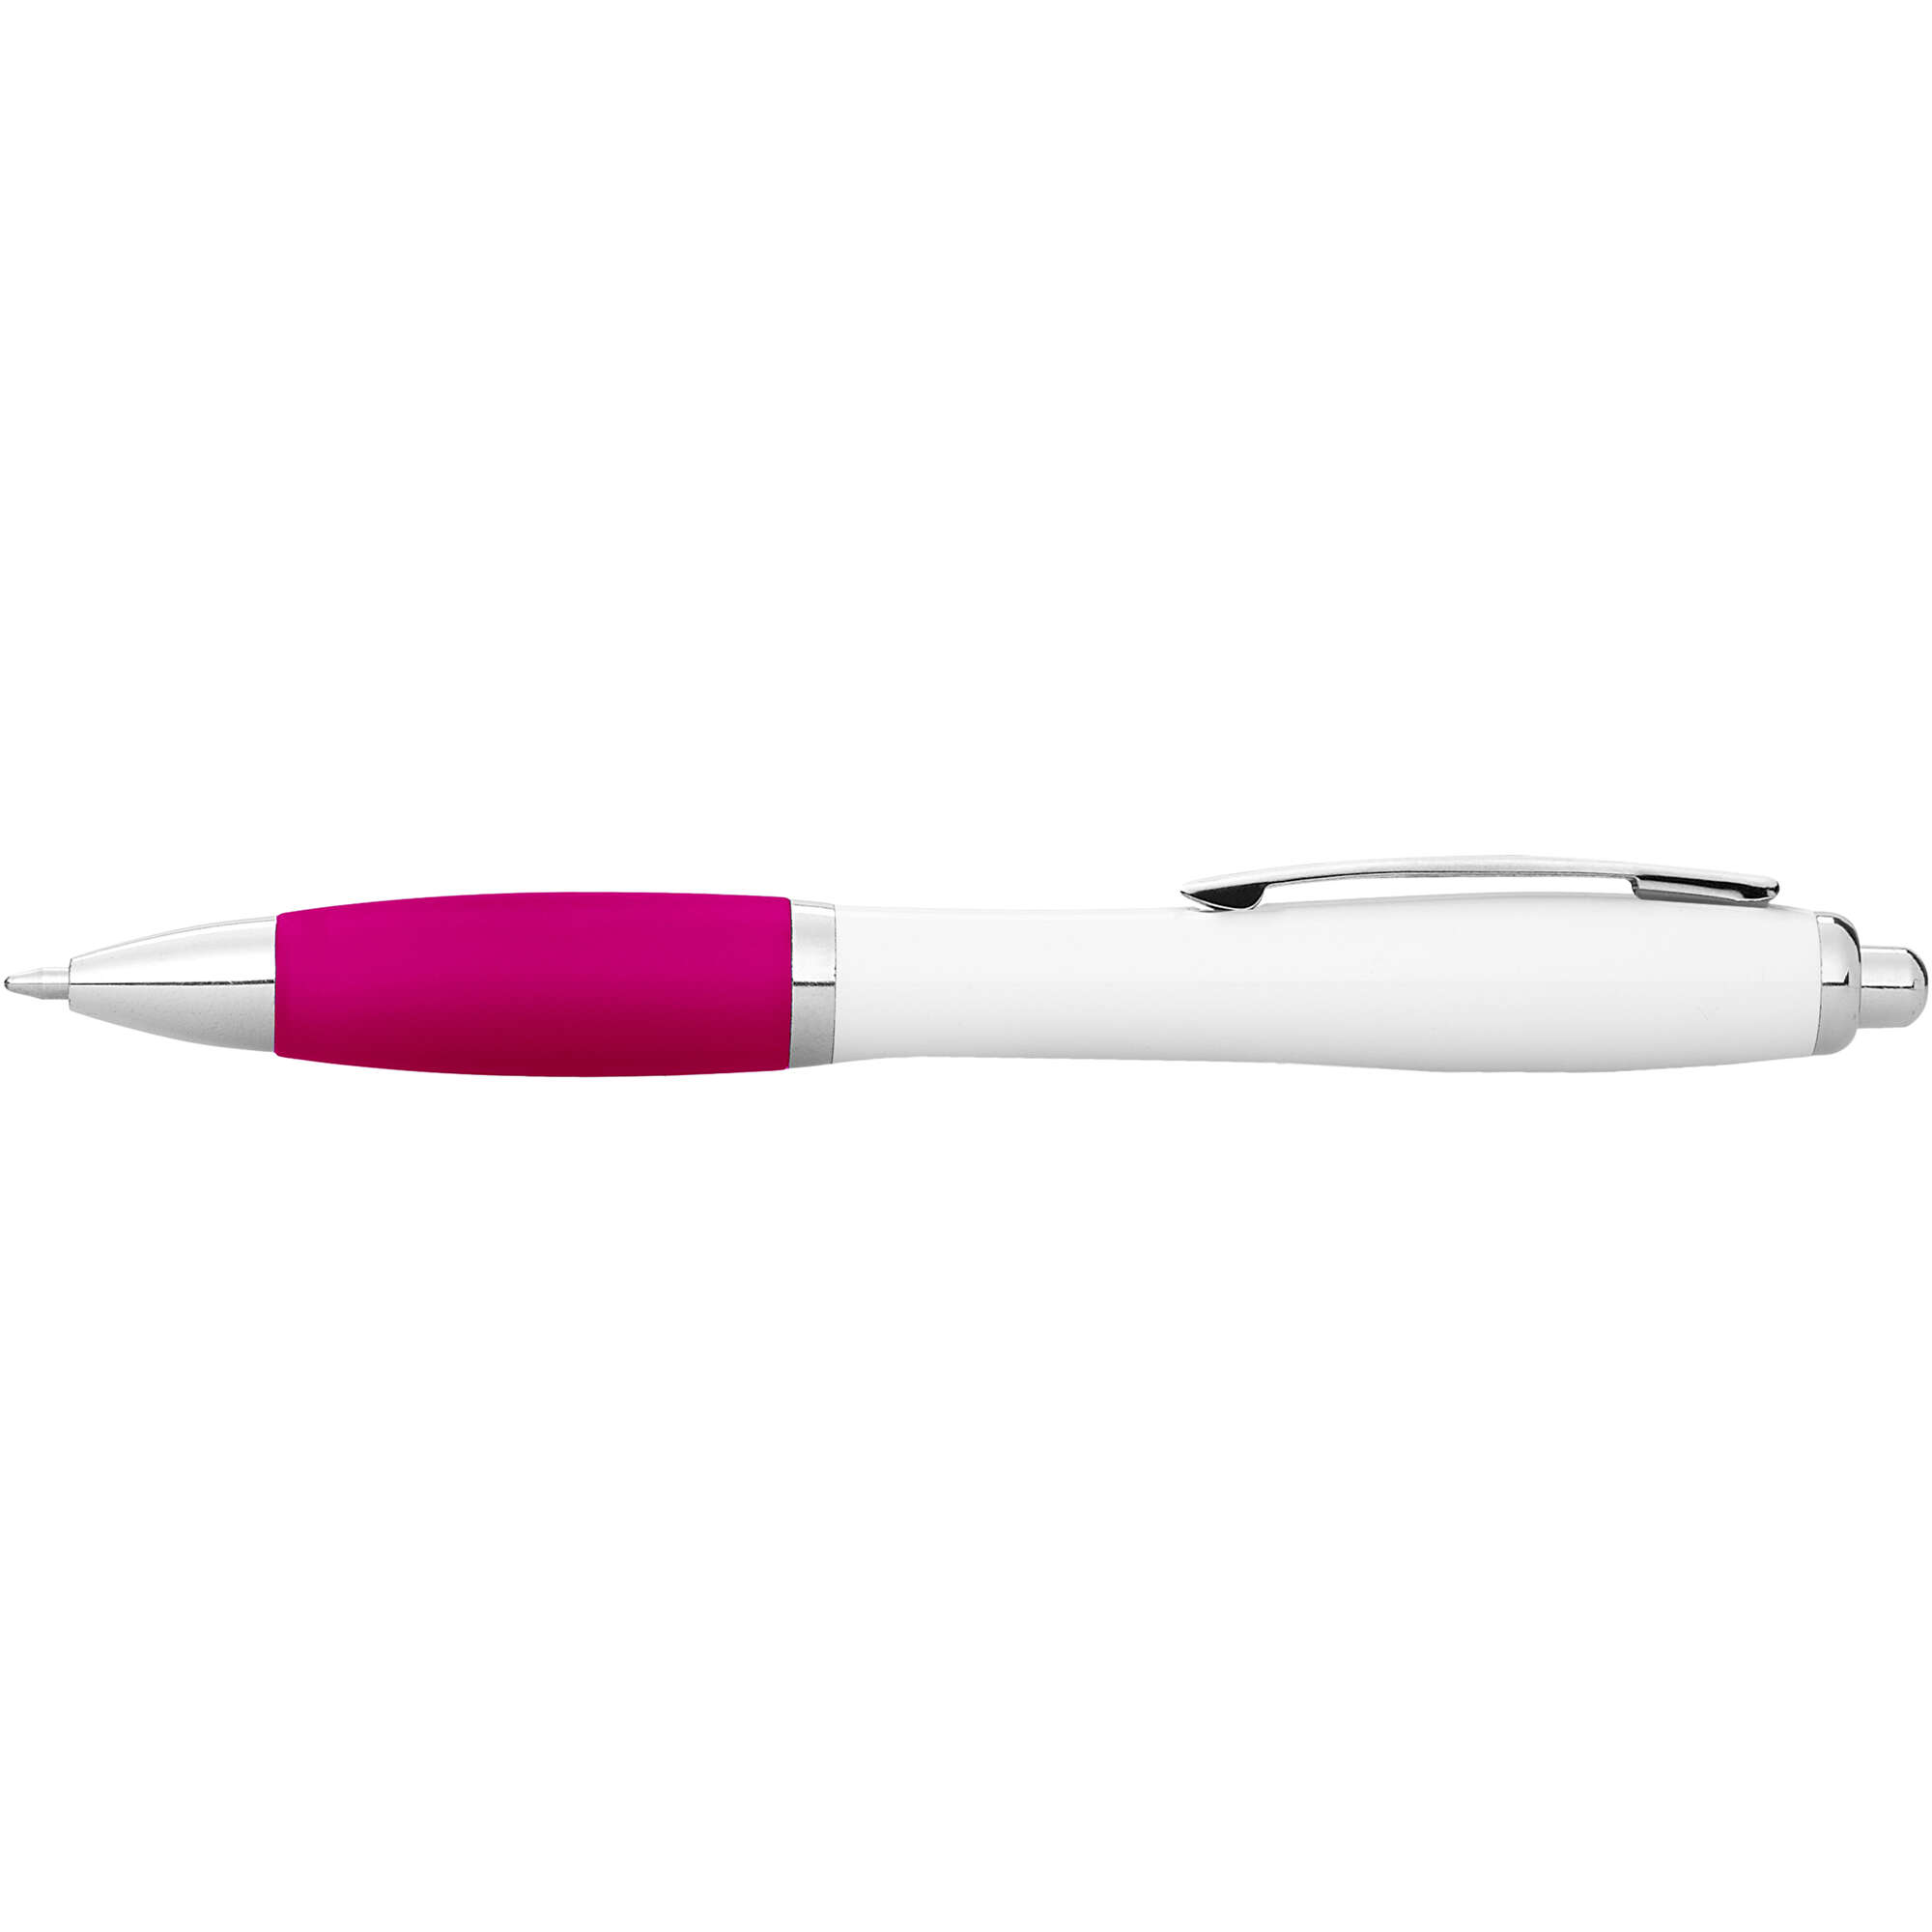 Nash Kugelschreiber Weiß Mit Farbigem Griff Weiß Rosa Abs Kunststoff 12g Als Werbeartikel